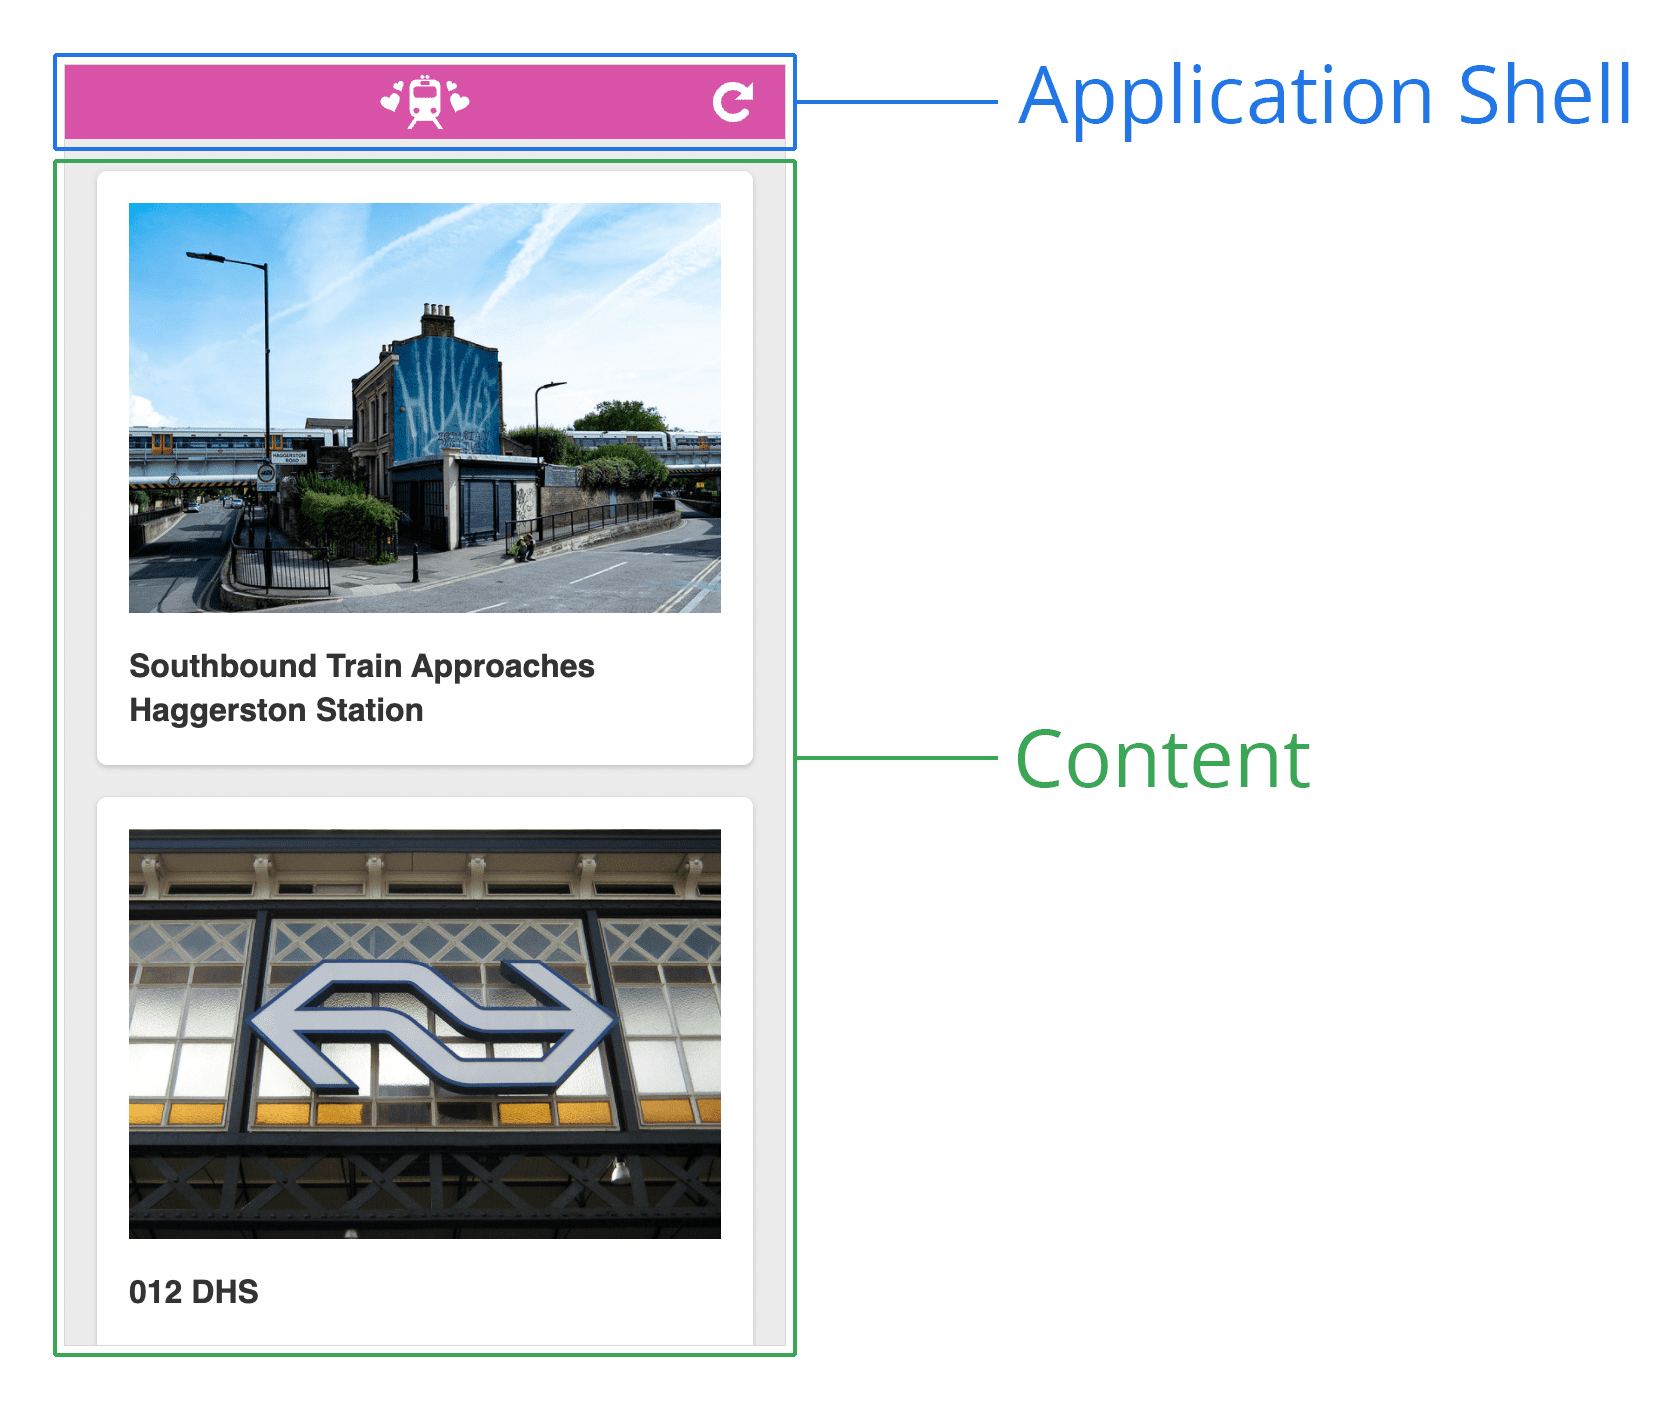 Sơ đồ về một shell ứng dụng. Đây là ảnh chụp màn hình của một trang web có tiêu đề ở trên cùng và vùng nội dung ở dưới cùng. Tiêu đề được gắn nhãn &#39;Application Shell&#39;, trong khi tiêu đề dưới cùng có nhãn &#39;Content&#39;.